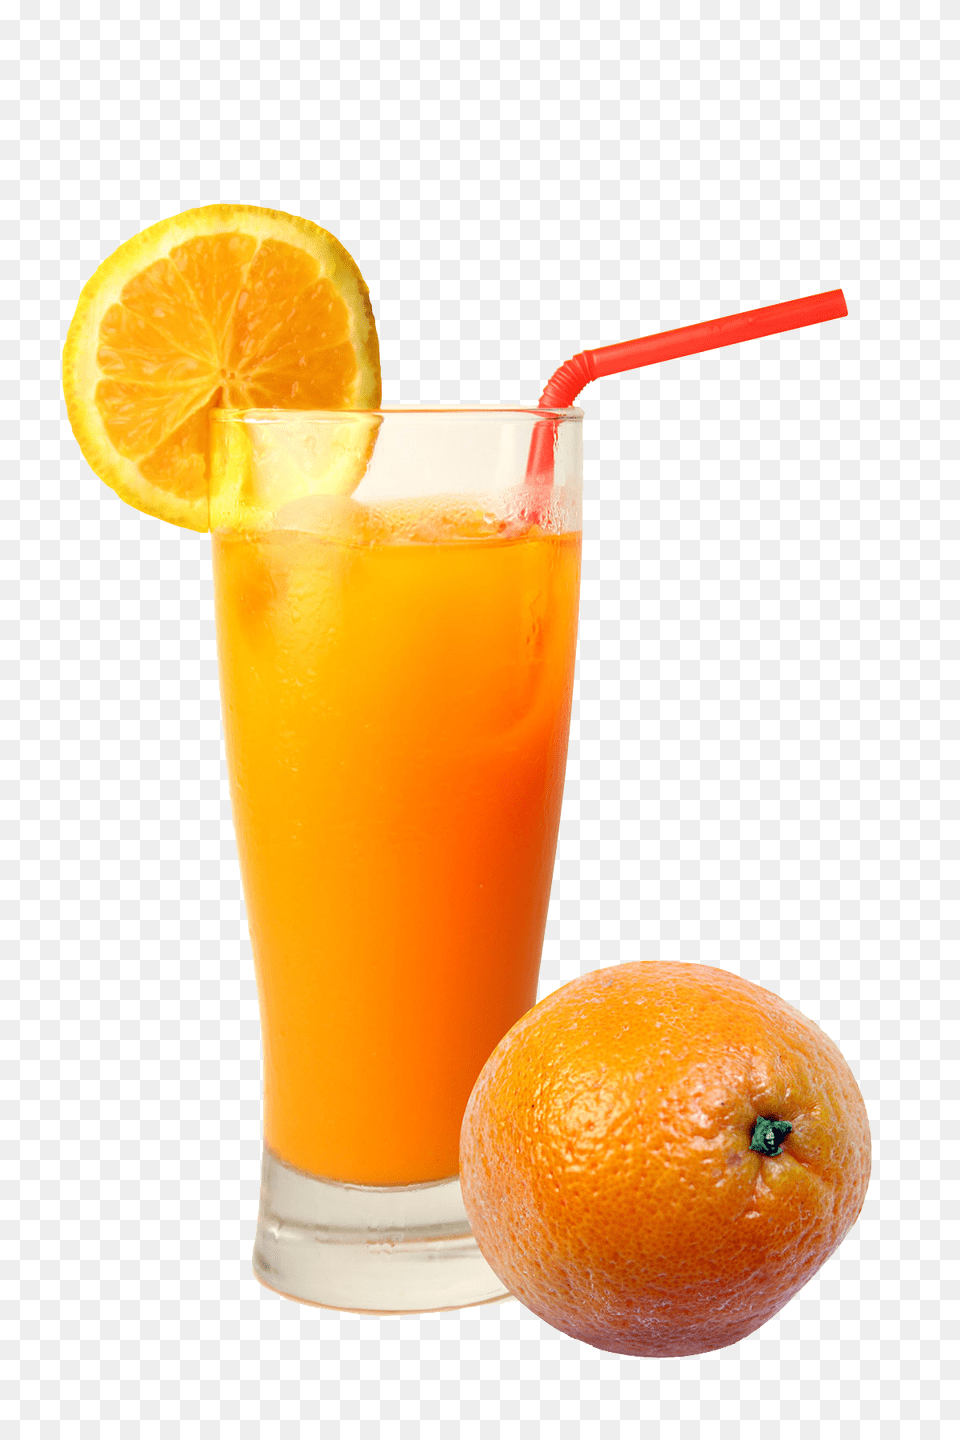 Juice Transparent Free Only, Beverage, Orange Juice, Food, Fruit Png